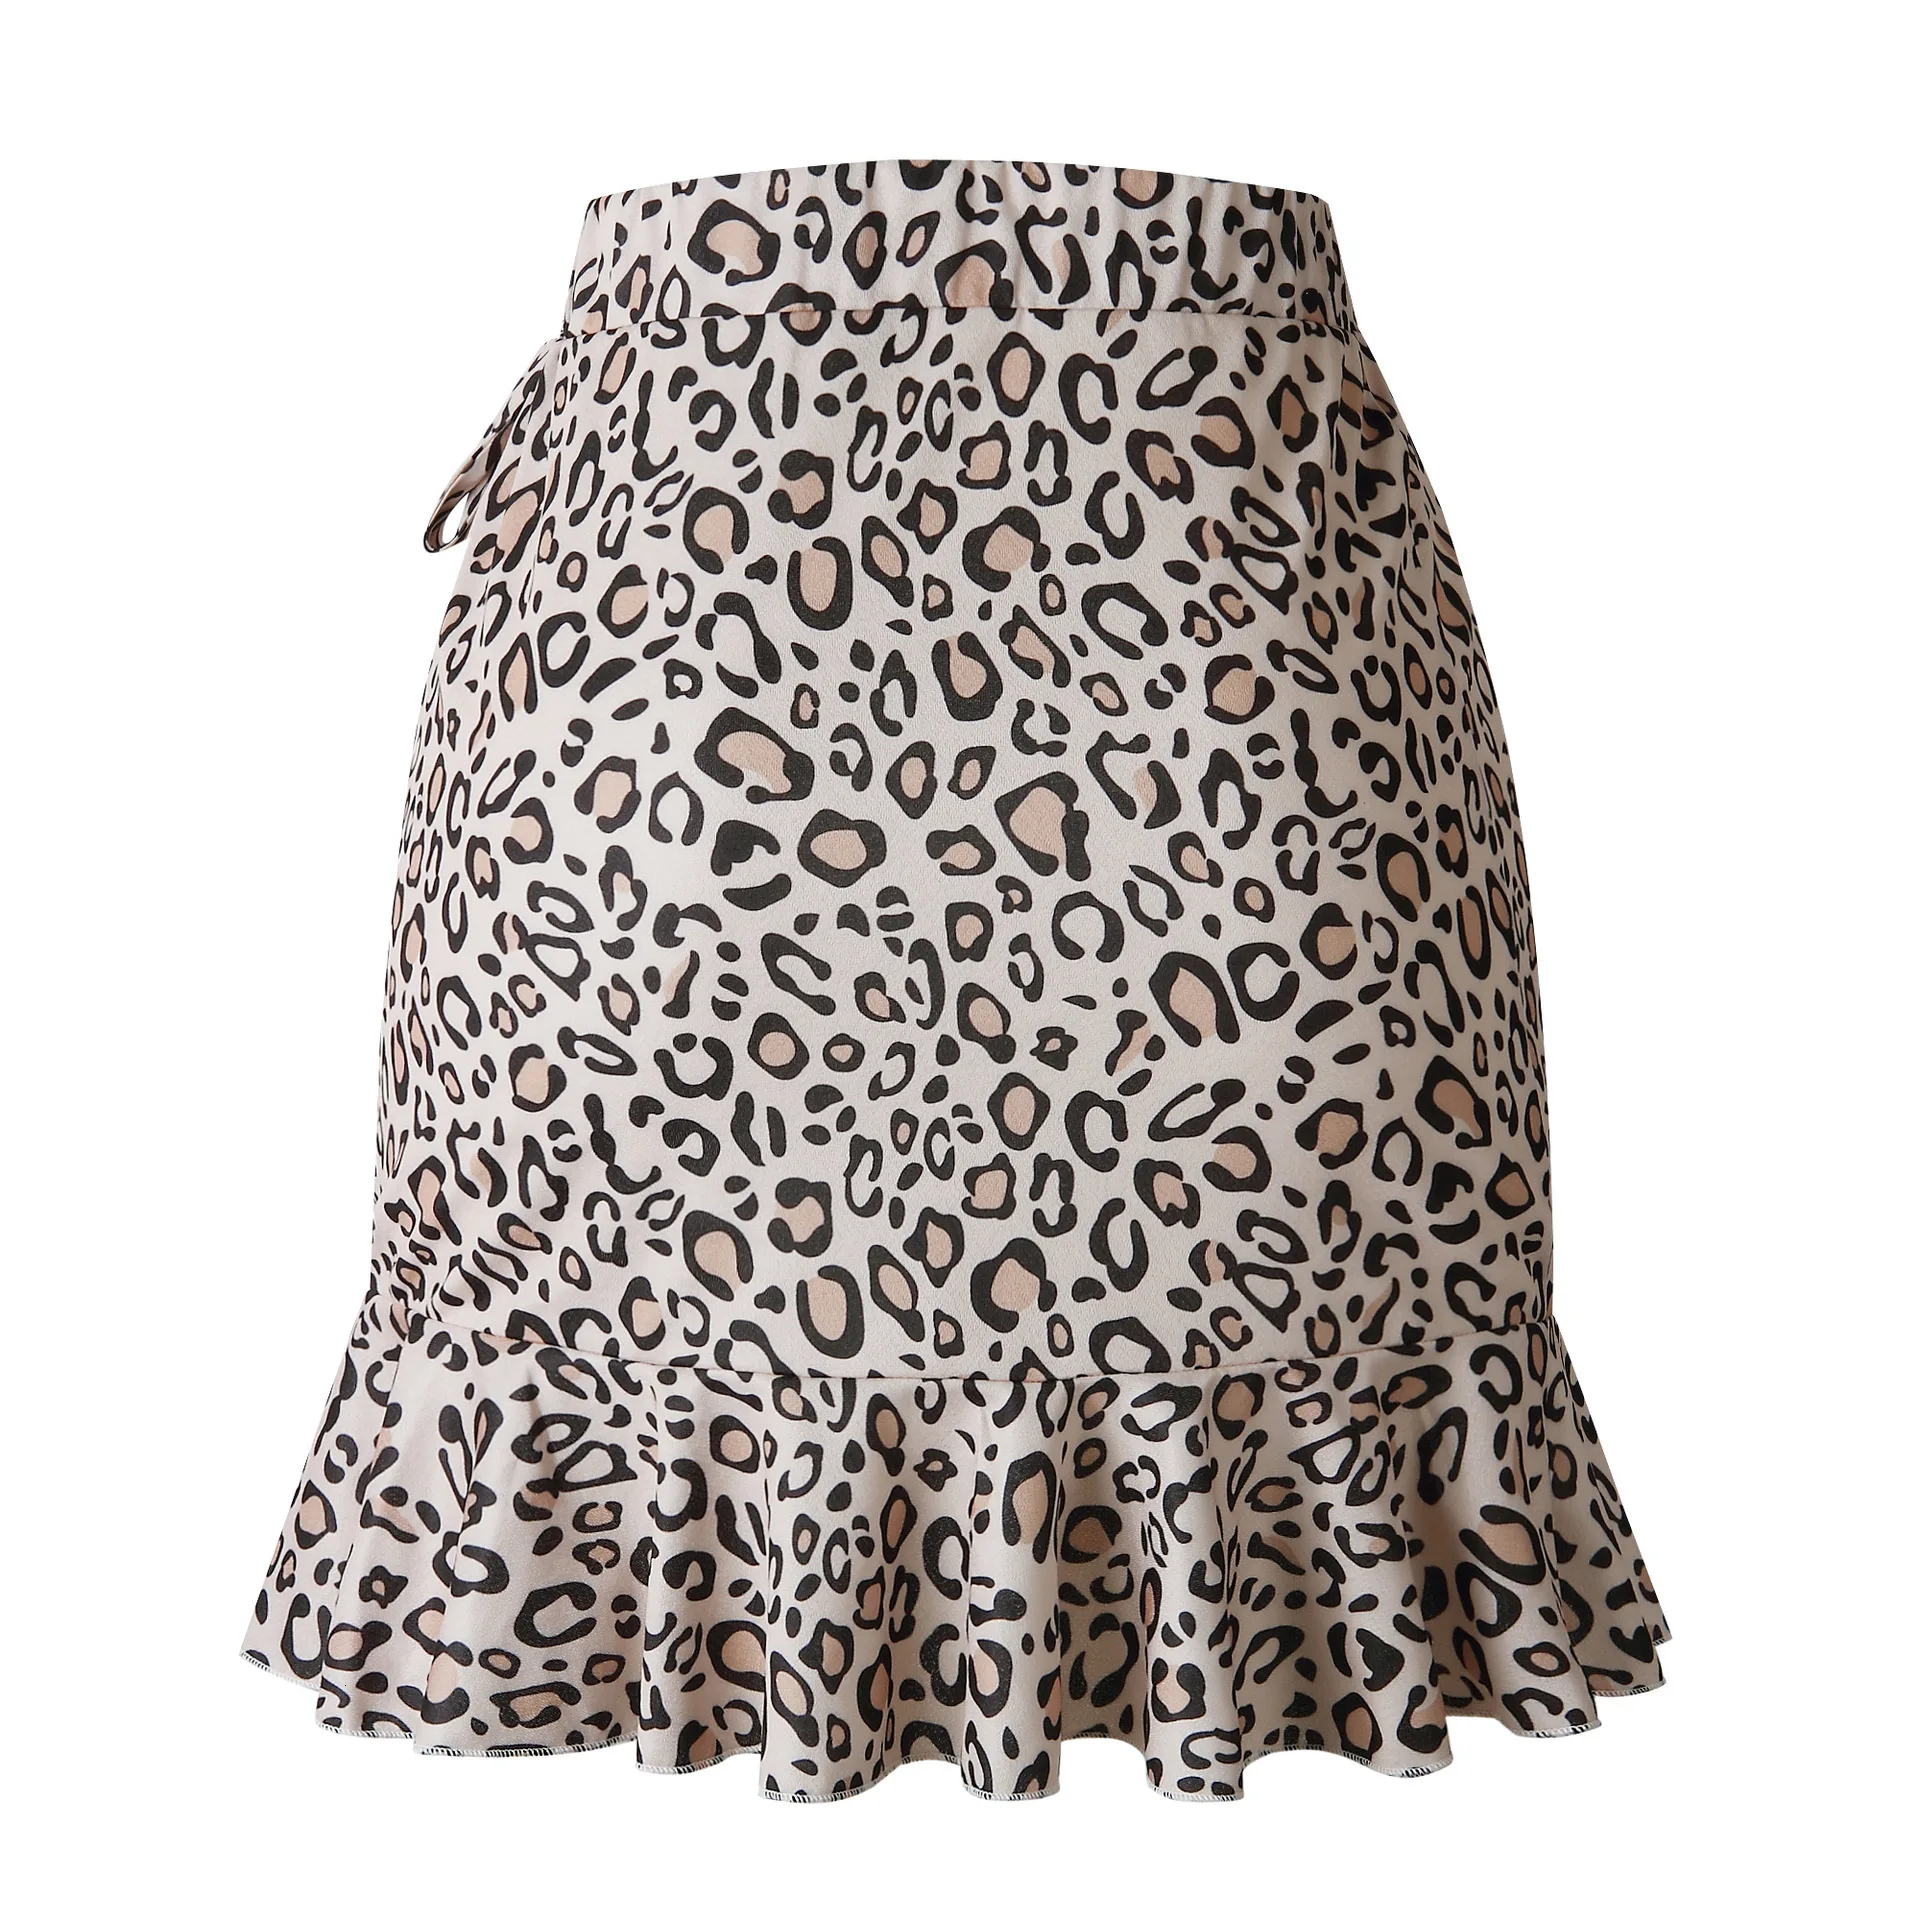 Dilusoo Цветочный принт Короткие мини-юбки Для женщин Летнее Плиссированное Высокая талия с бантом галстук стандартная юбка 2019 дамы тонкий